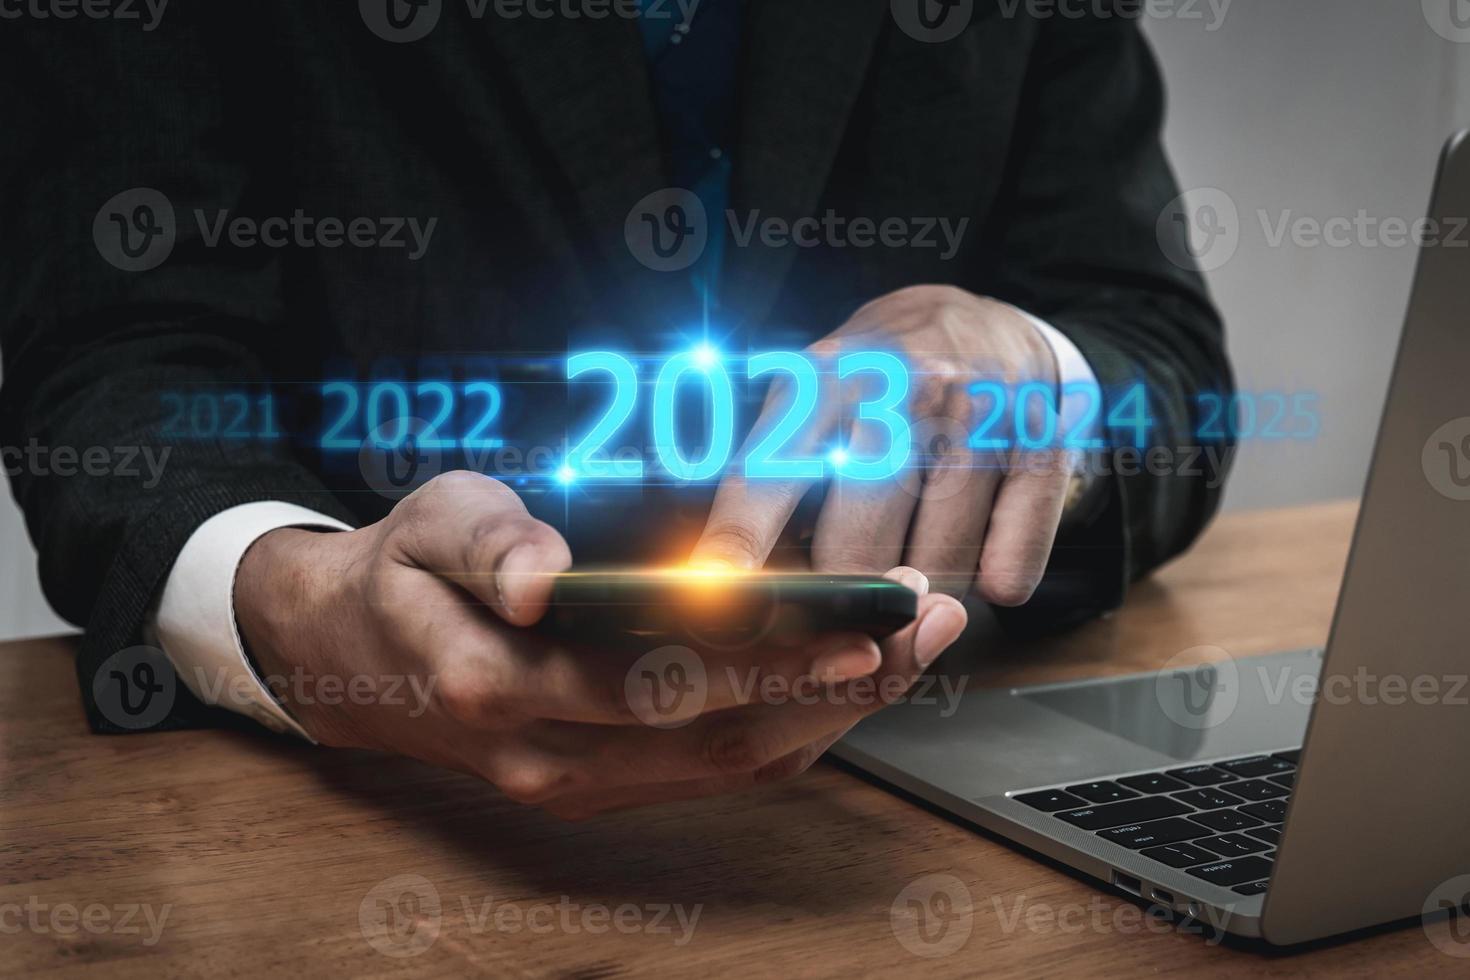 tendance de 2023. investisseur d'entreprise utilisant un téléphone portable avec diagramme virtuel de l'année 2023, tendance commerciale, changement de 2022 à 2023, stratégie, investissement, planification d'entreprise et concept de bonne année photo